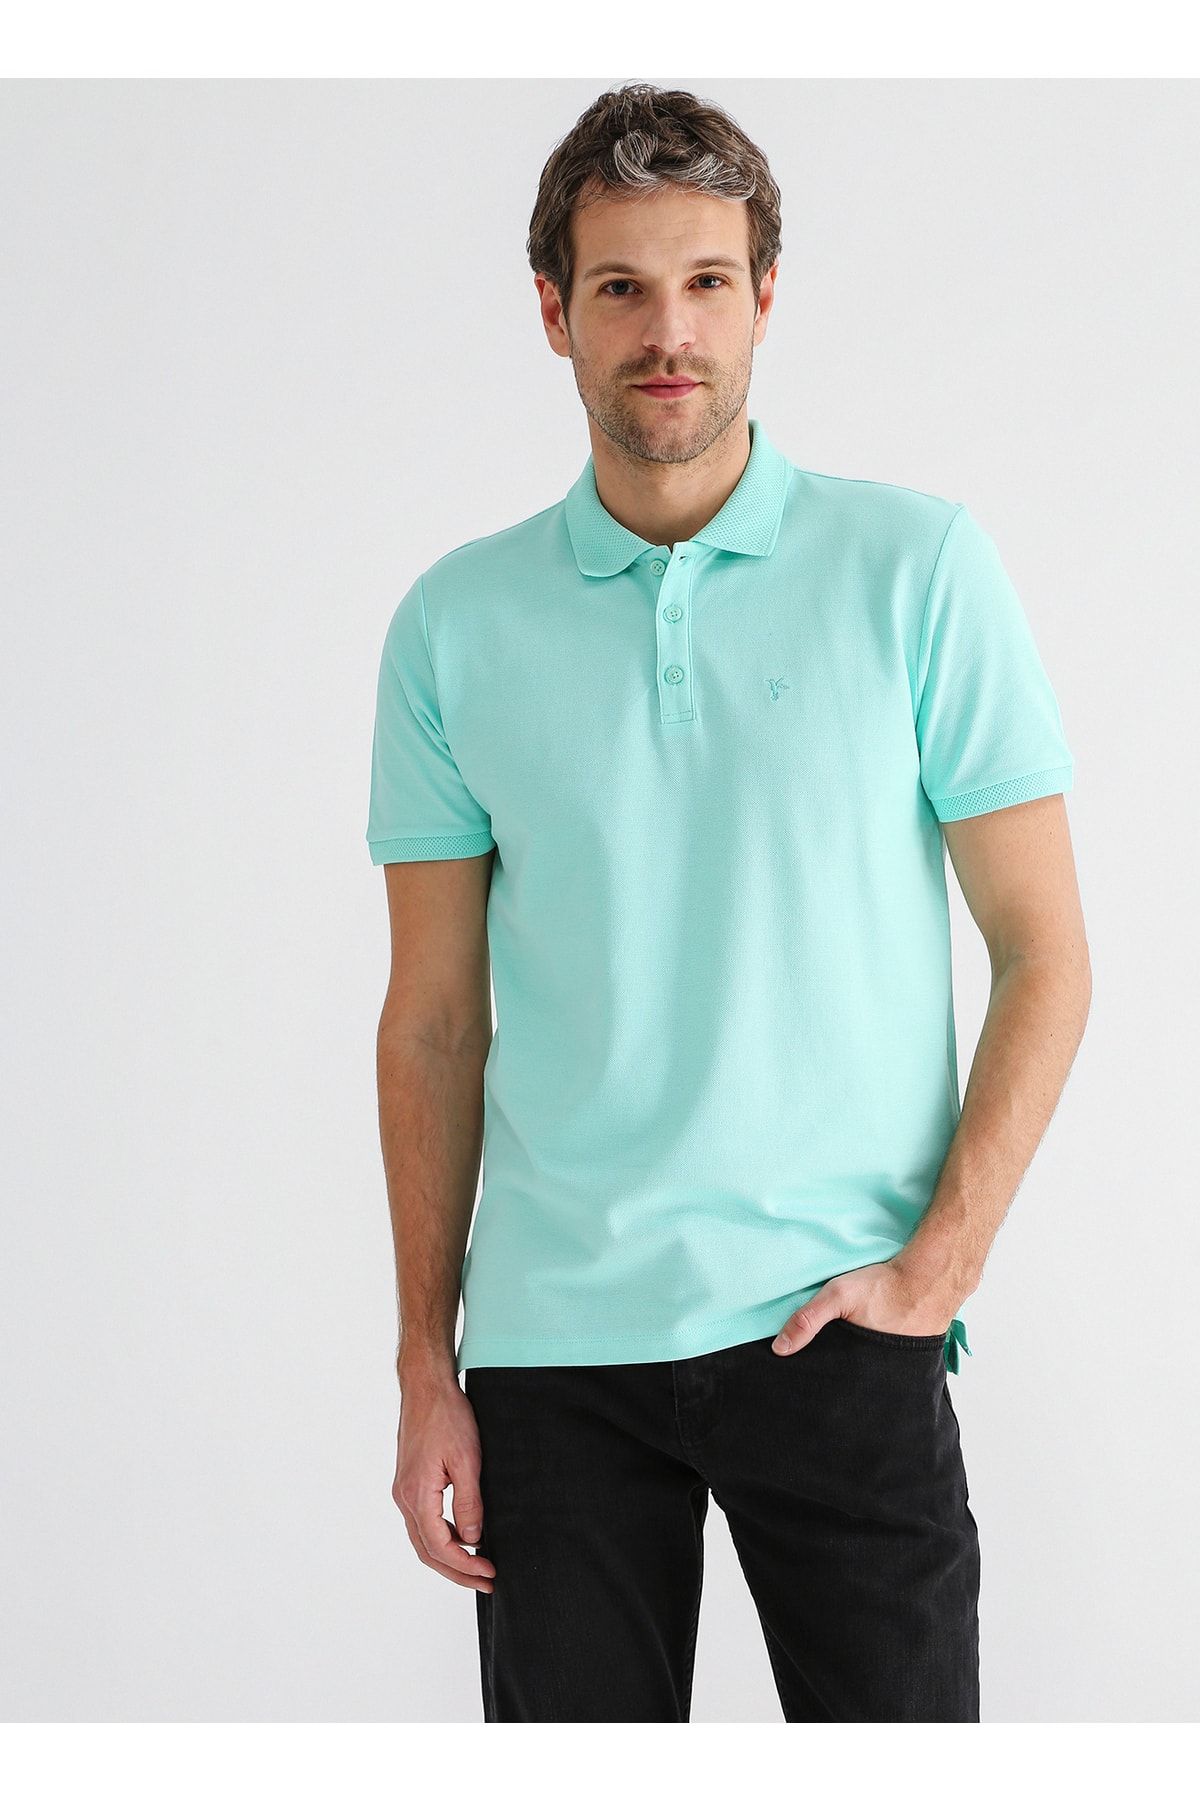 Fabrika Comfort Düz Mint Erkek Polo T-shirt Cm Nobro K Cepsız